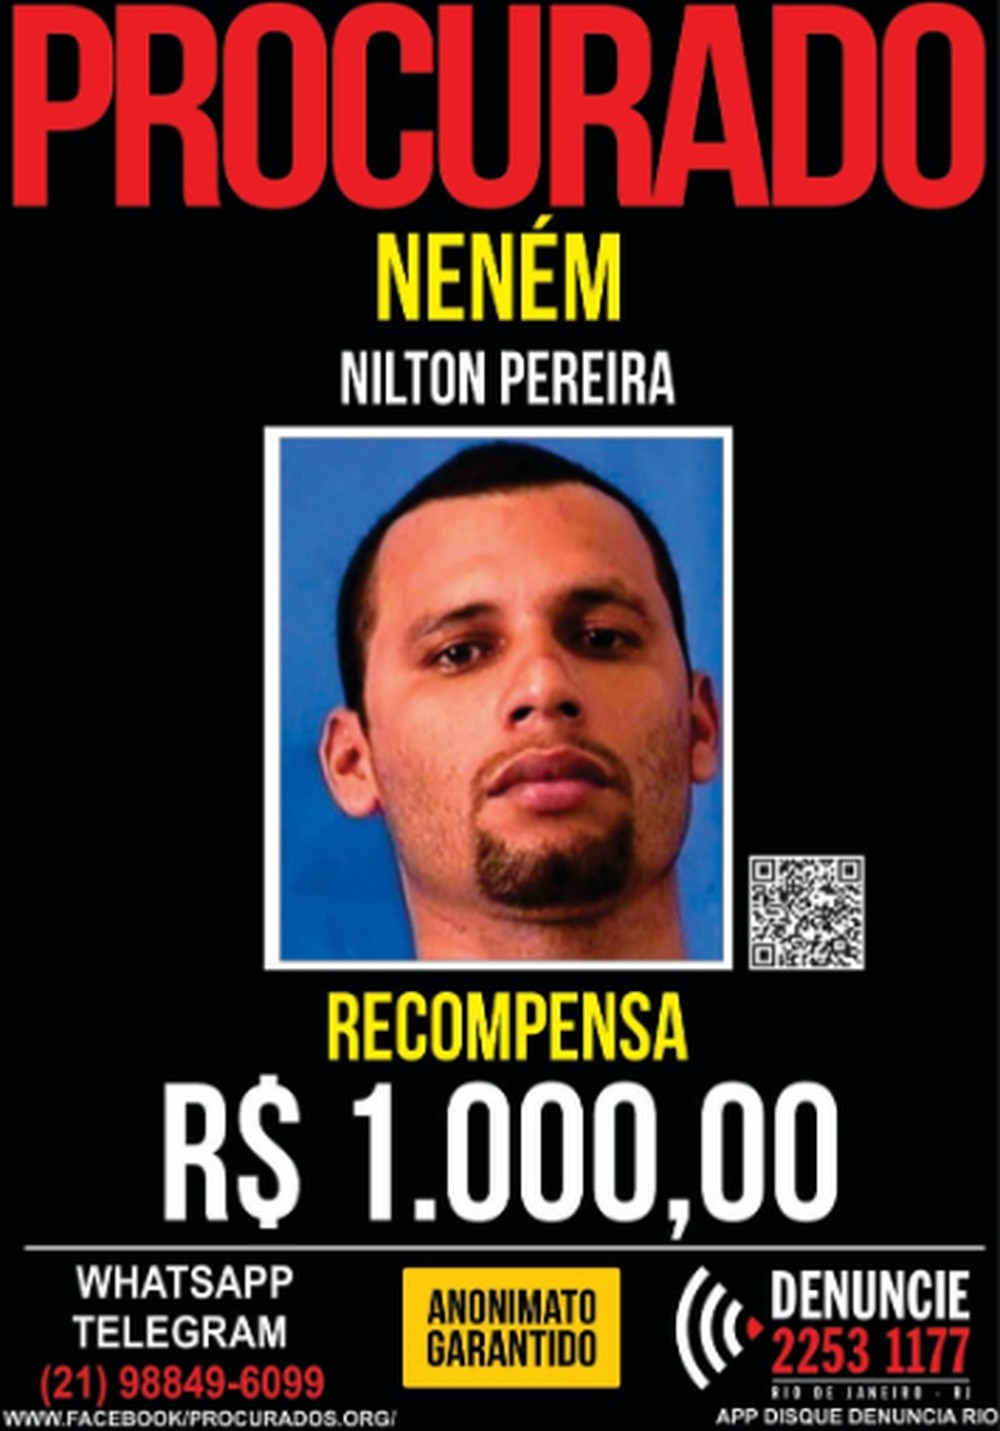 Nilton Pereira